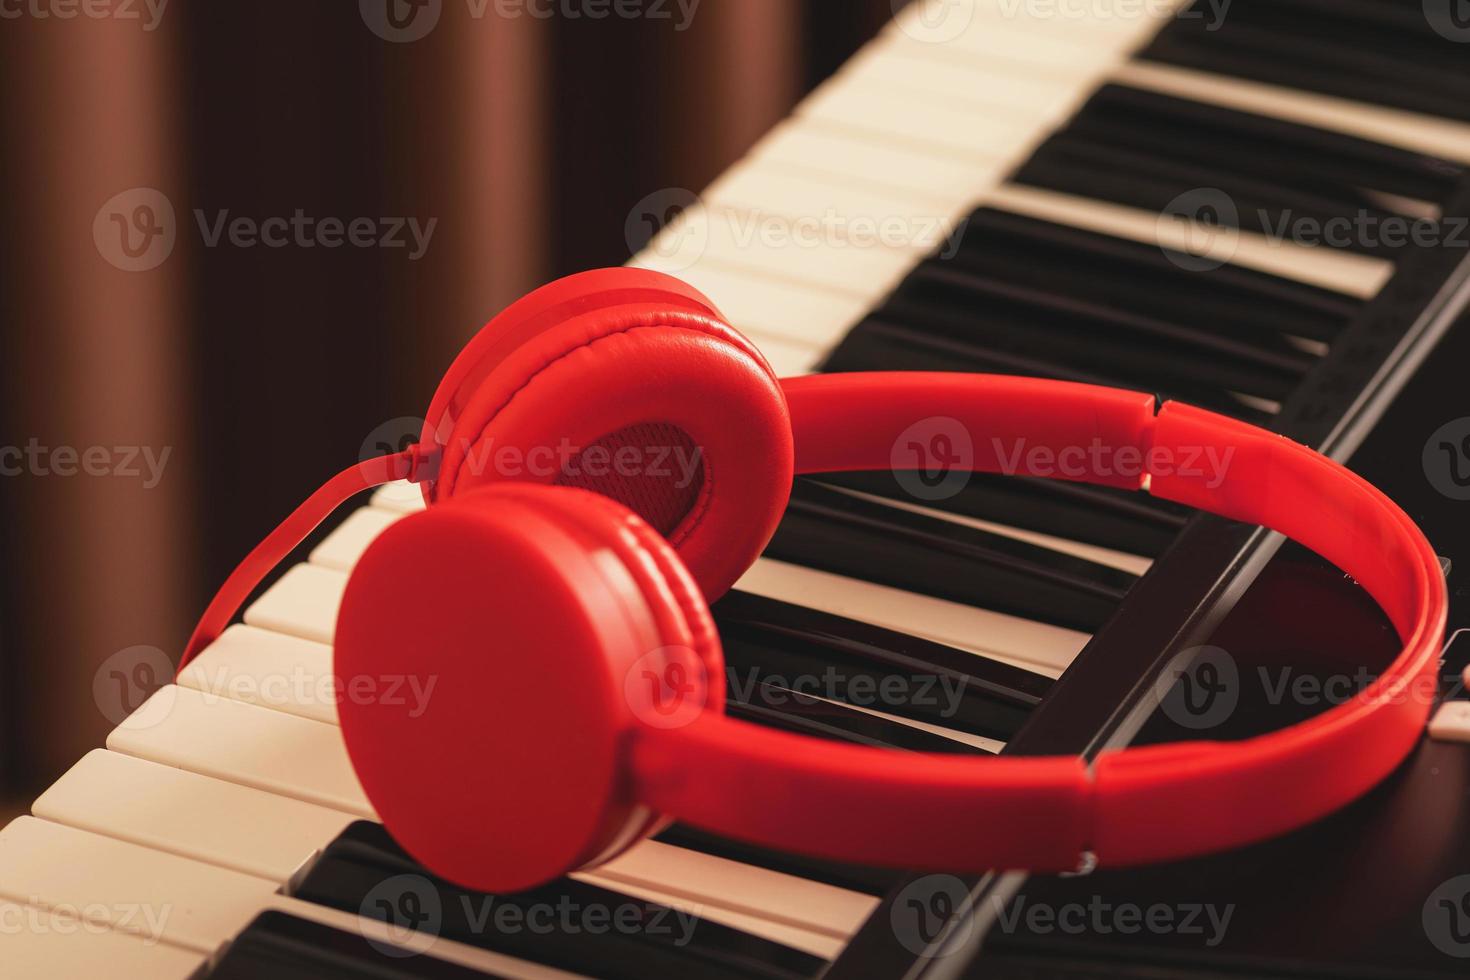 primer plano de auriculares rojos sobre teclado sintetizador foto